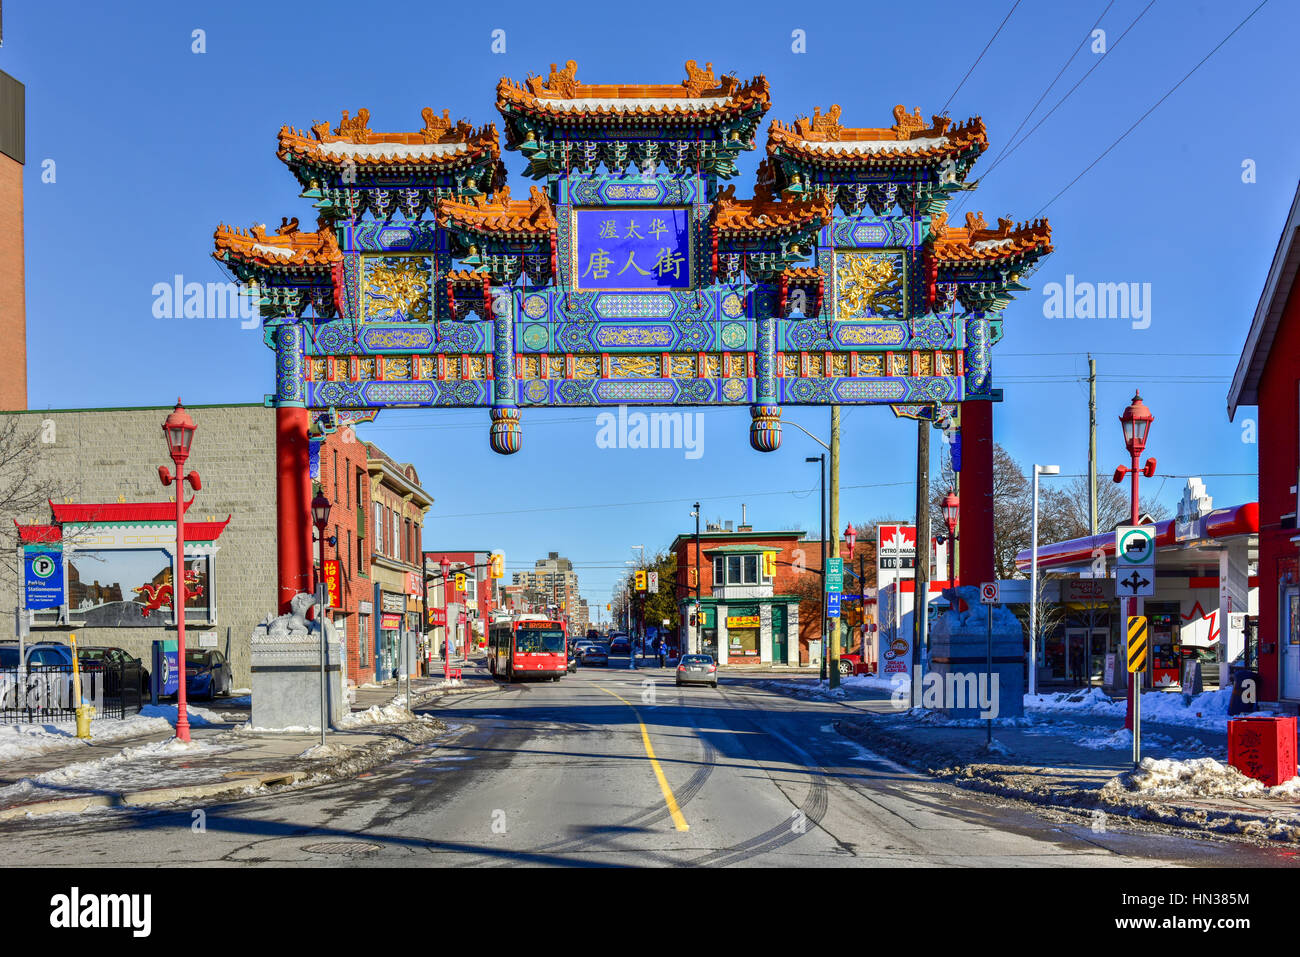 Ottawa, Canadá - 25 de diciembre de 2016: el real arco imperial en Ottawa, Canadá. Marca la entrada de la zona de Chinatown en Ottawa. Foto de stock